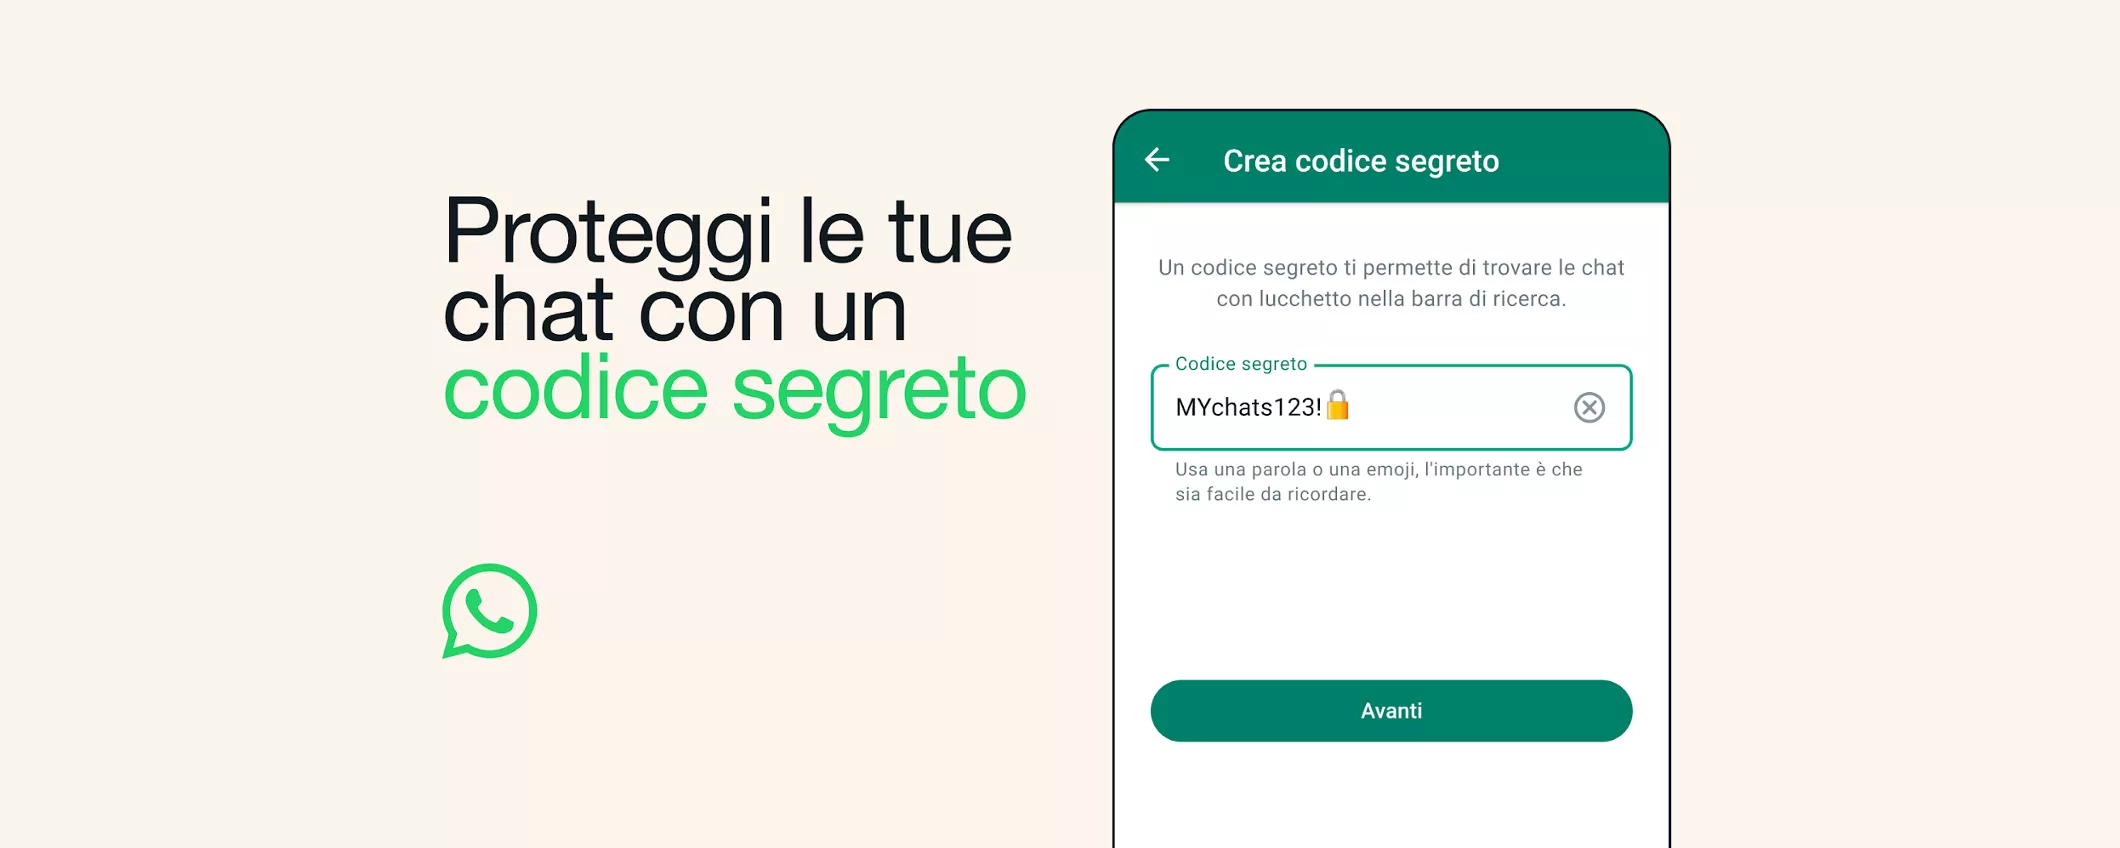 WhatsApp SUPER sicuro con il Codice Segreto per Lucchetto Chat